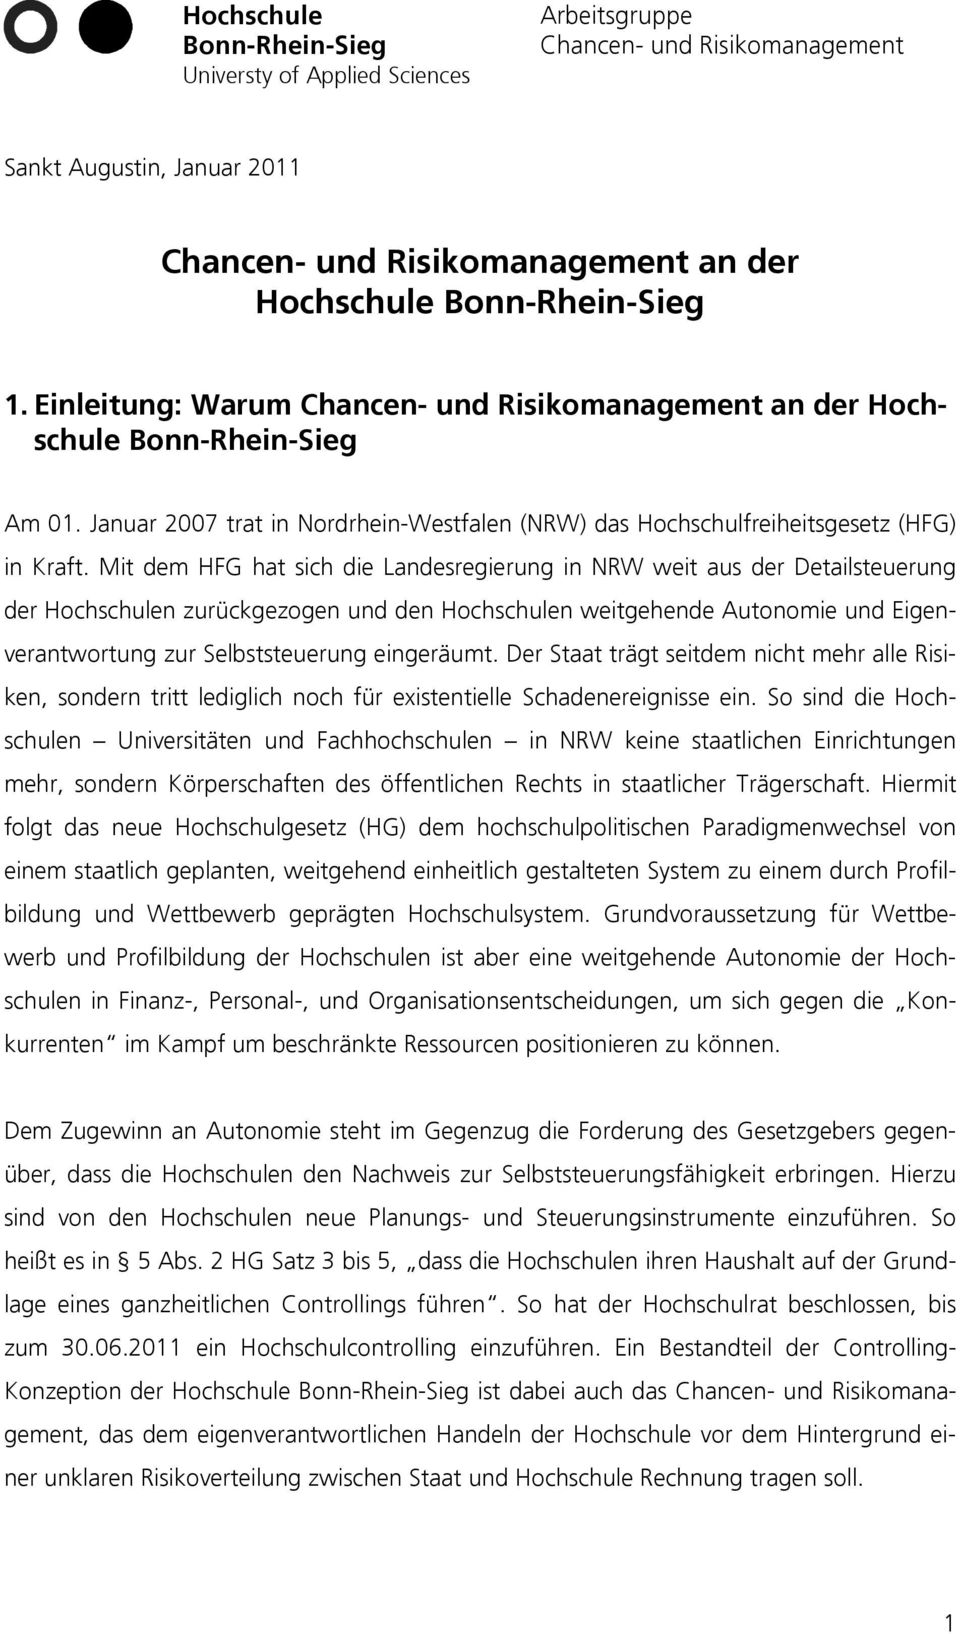 Mit dem HFG hat sich die Landesregierung in NRW weit aus der Detailsteuerung der Hochschulen zurückgezogen und den Hochschulen weitgehende Autonomie und Eigenverantwortung zur Selbststeuerung